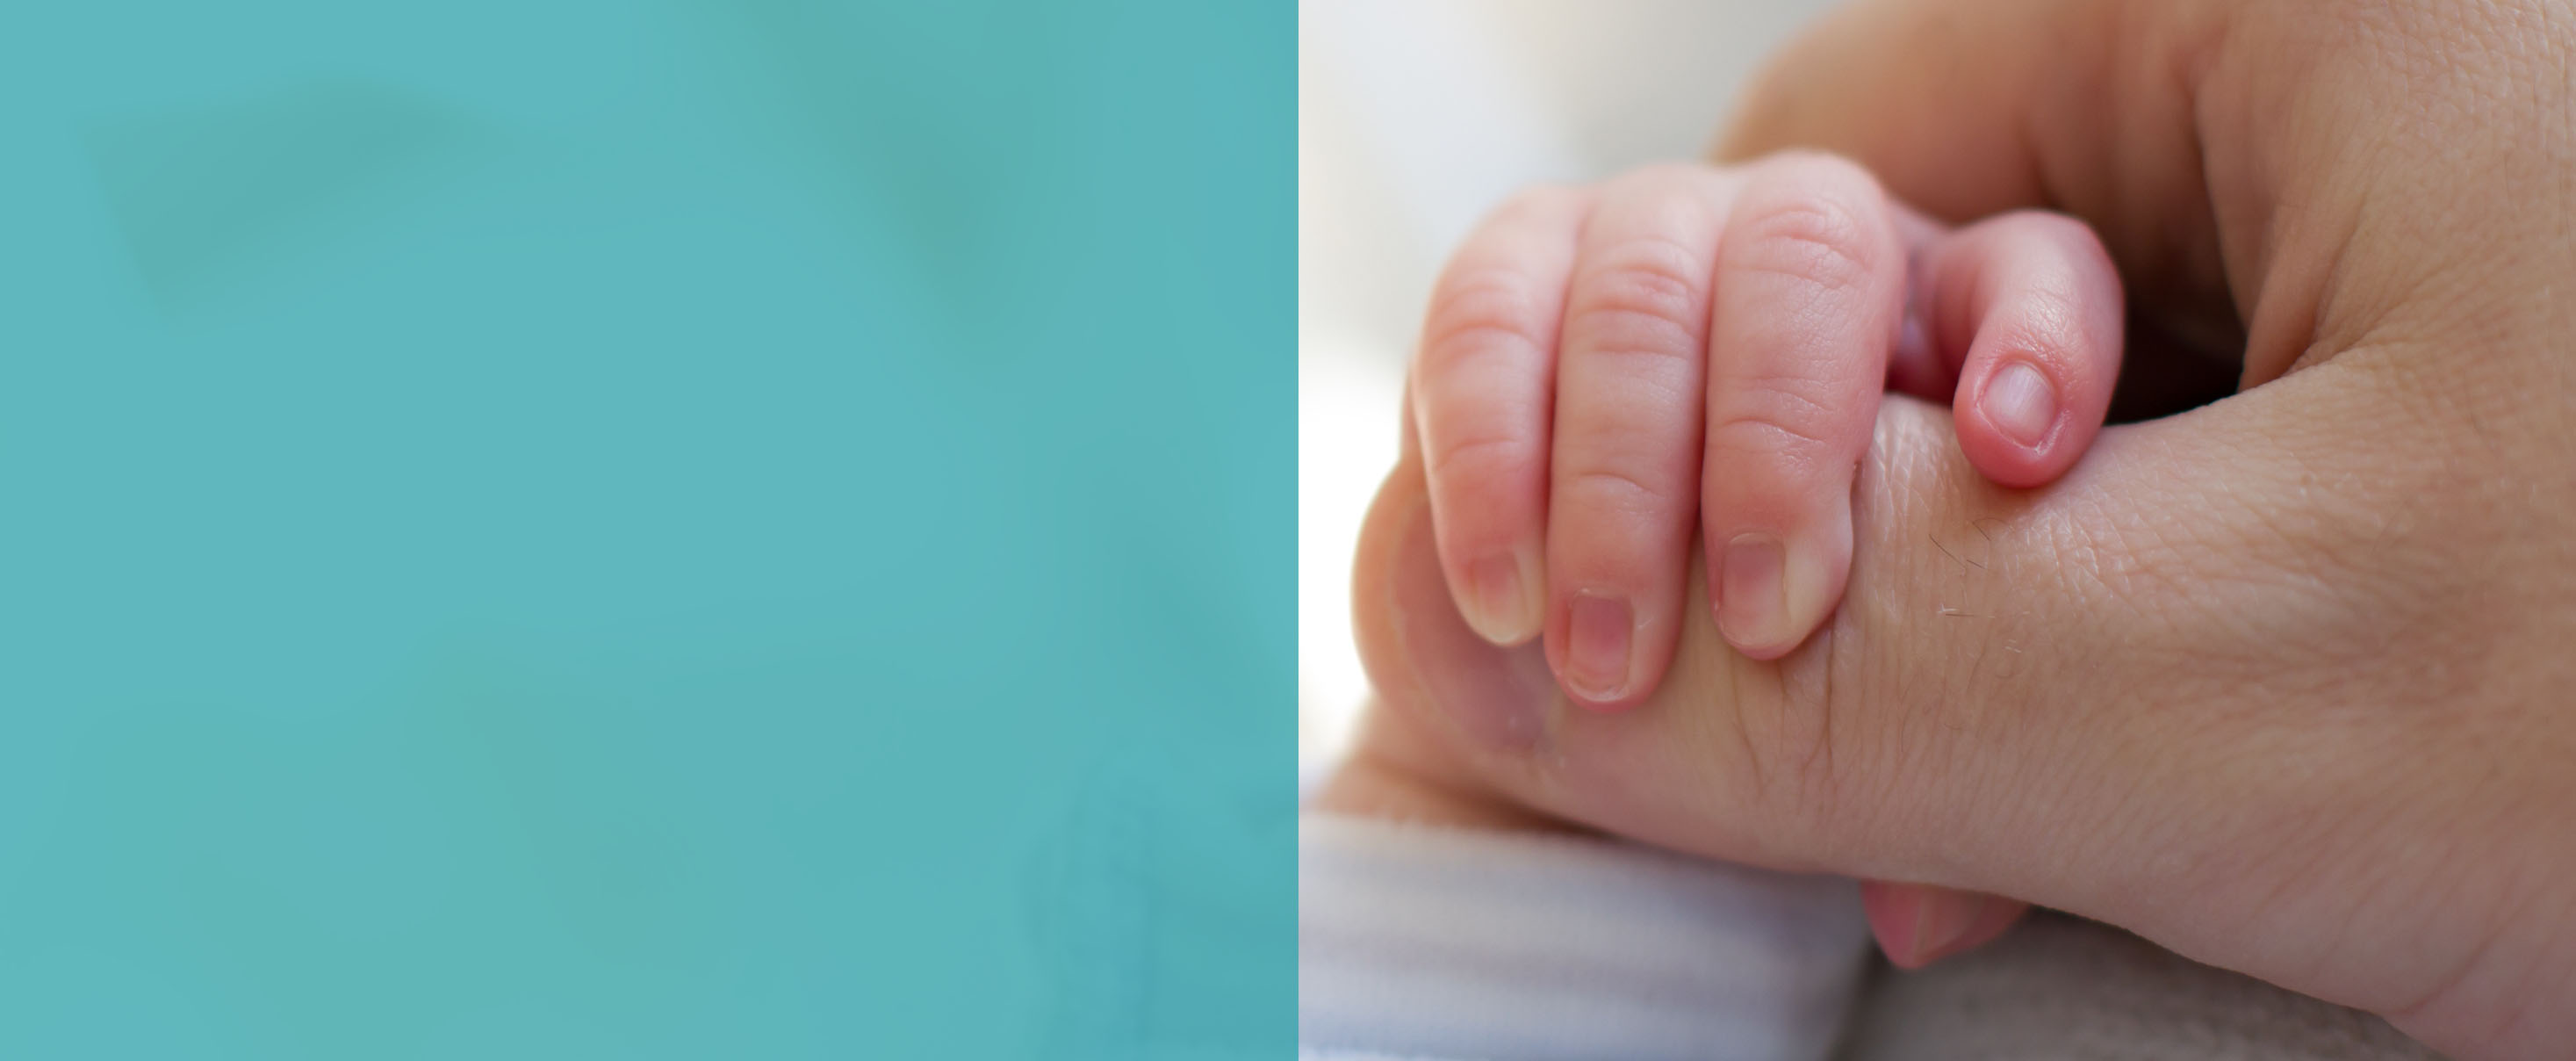 Newborn baby touching his mother hand